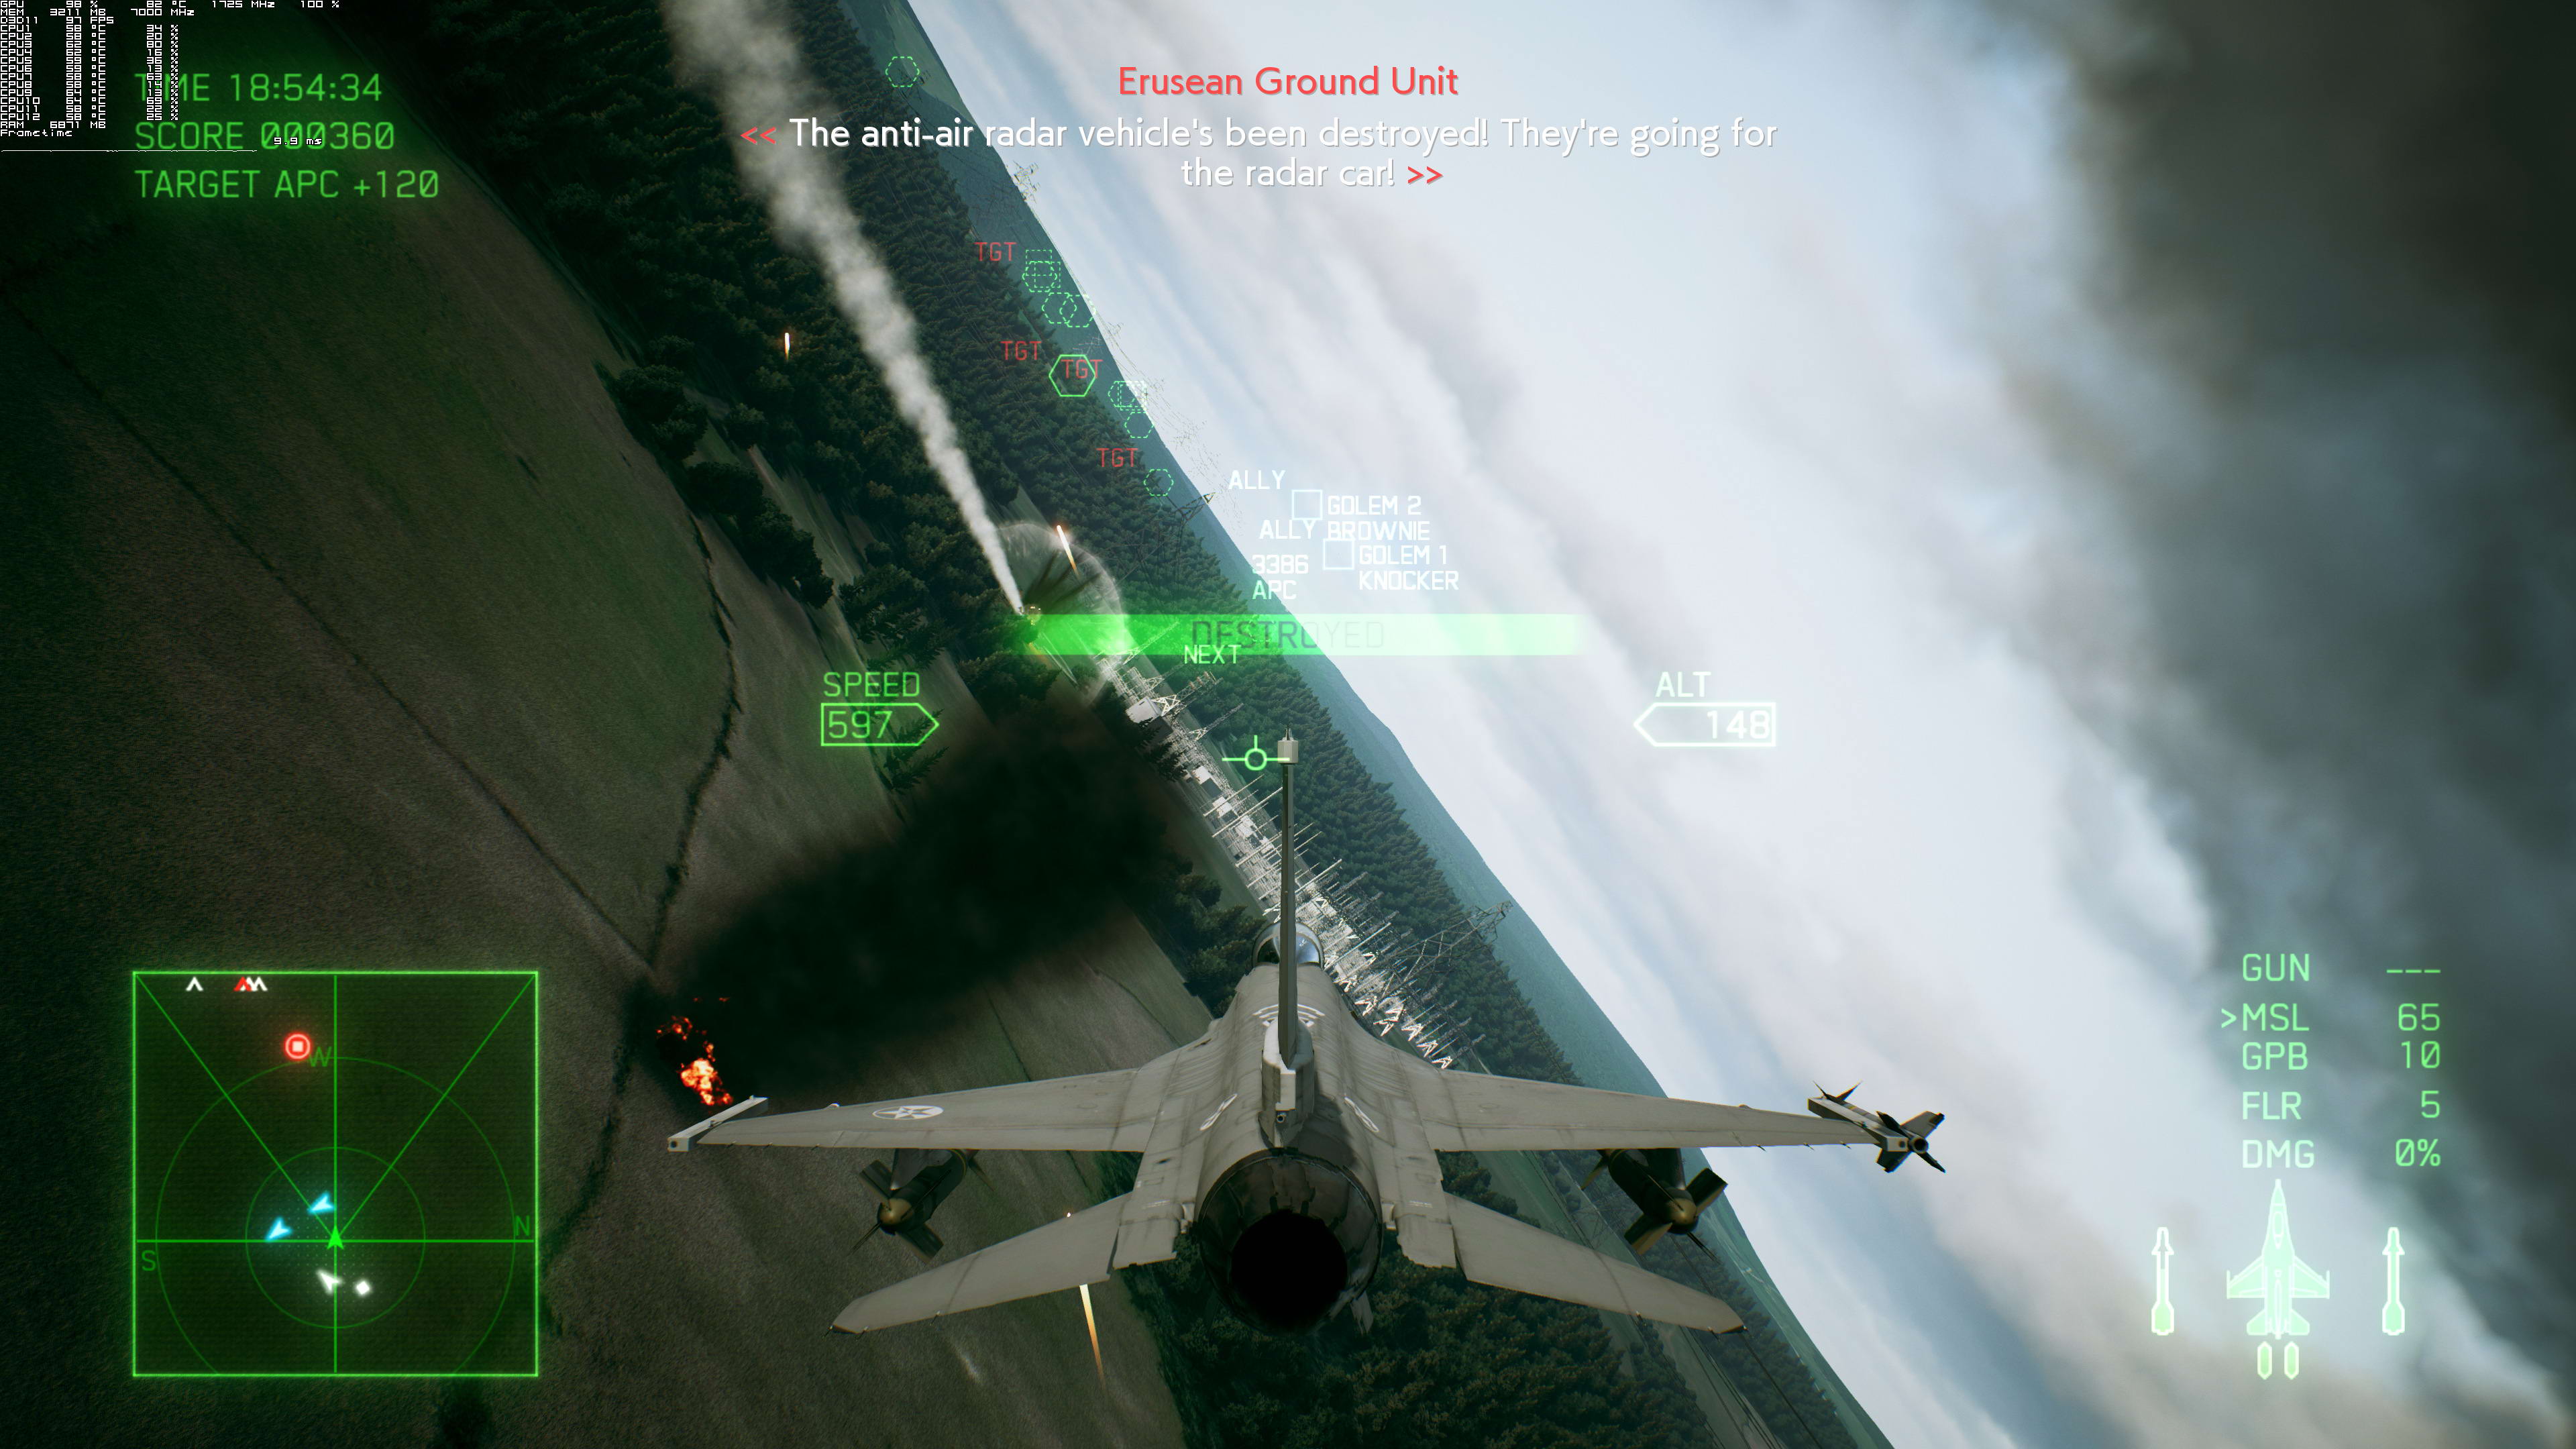 《皇牌空战7》PC版测试截图 2080Ti运行效果超神